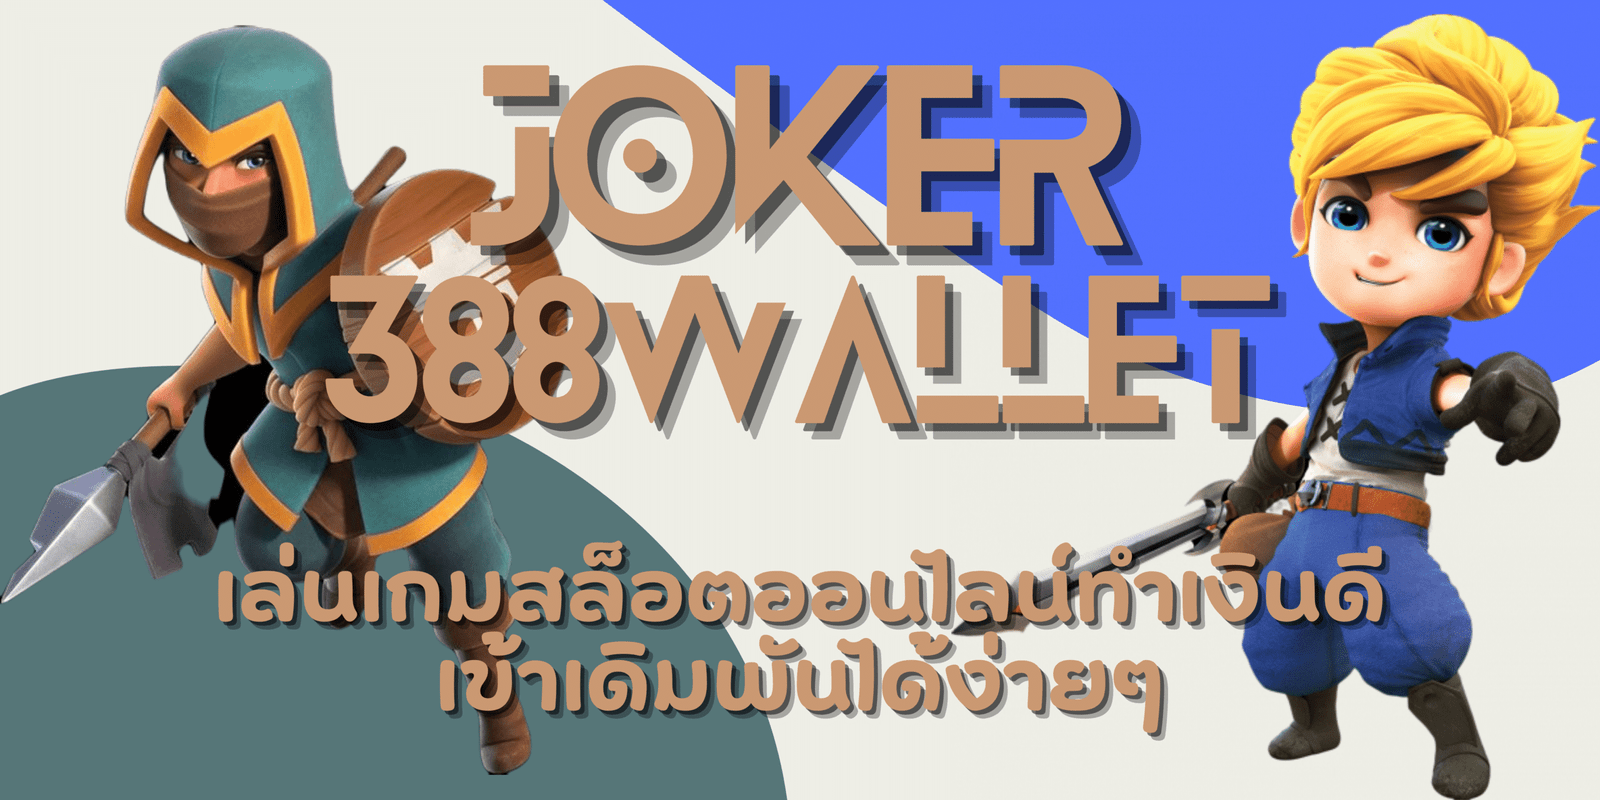 joker-388wallet-สมัครสมาชิก